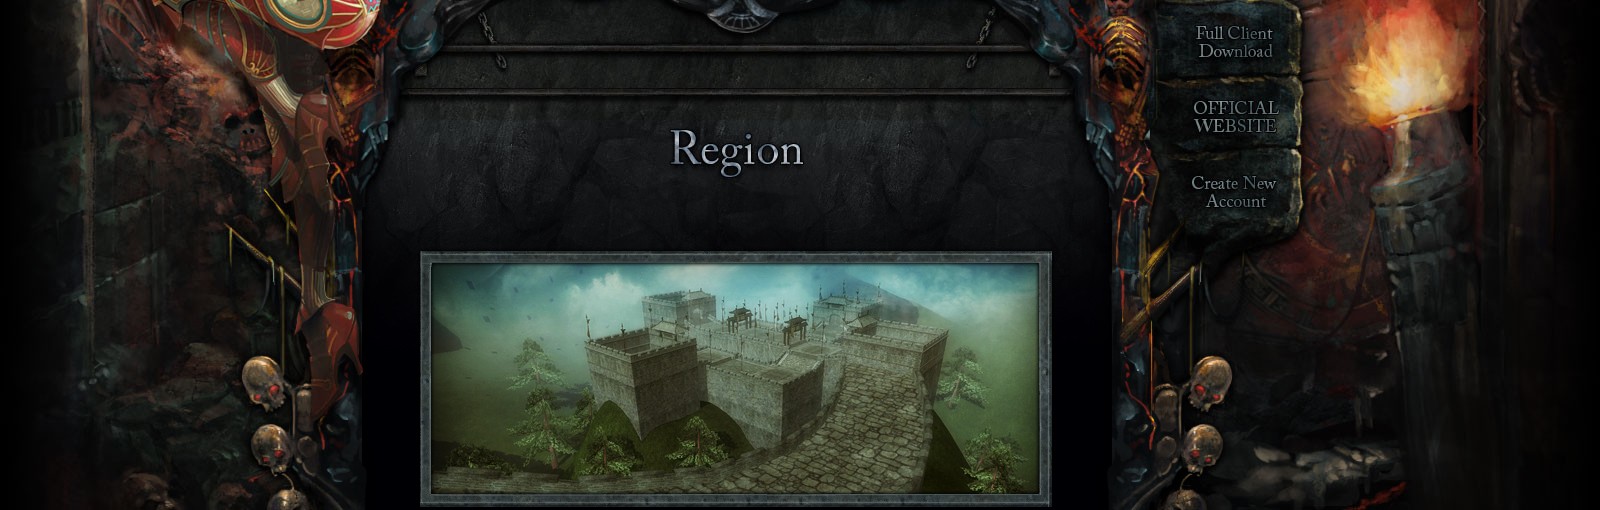 Region Region11